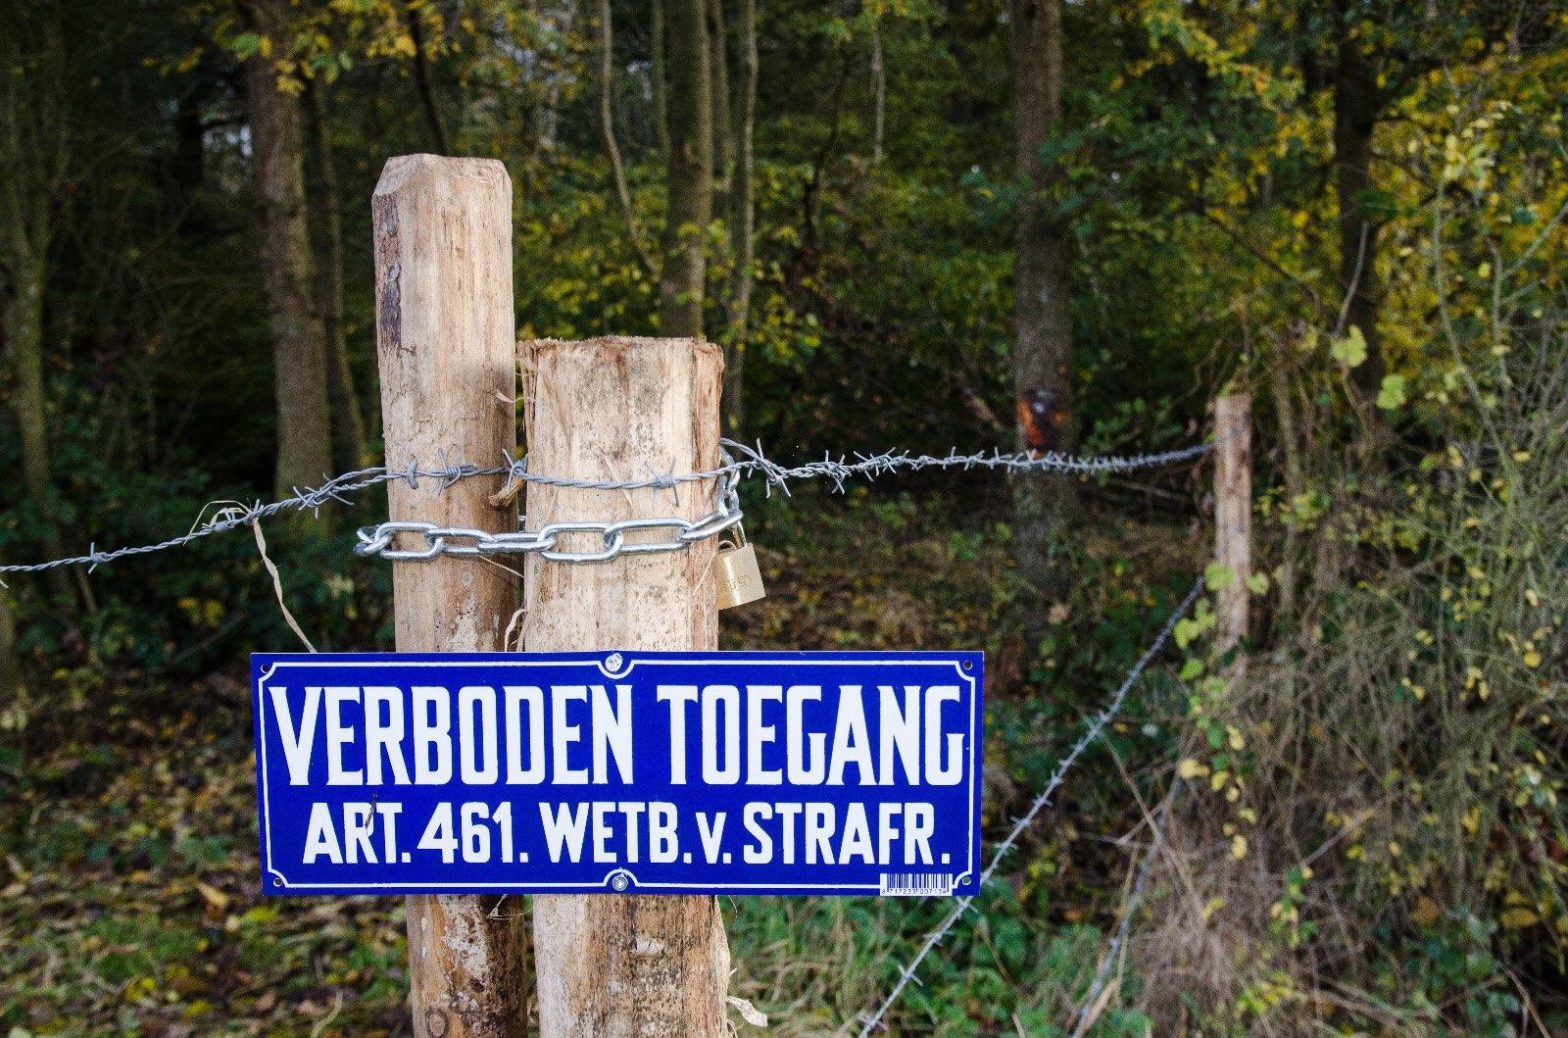 VDL Nedcar heeft het bos afgesloten voor publiek